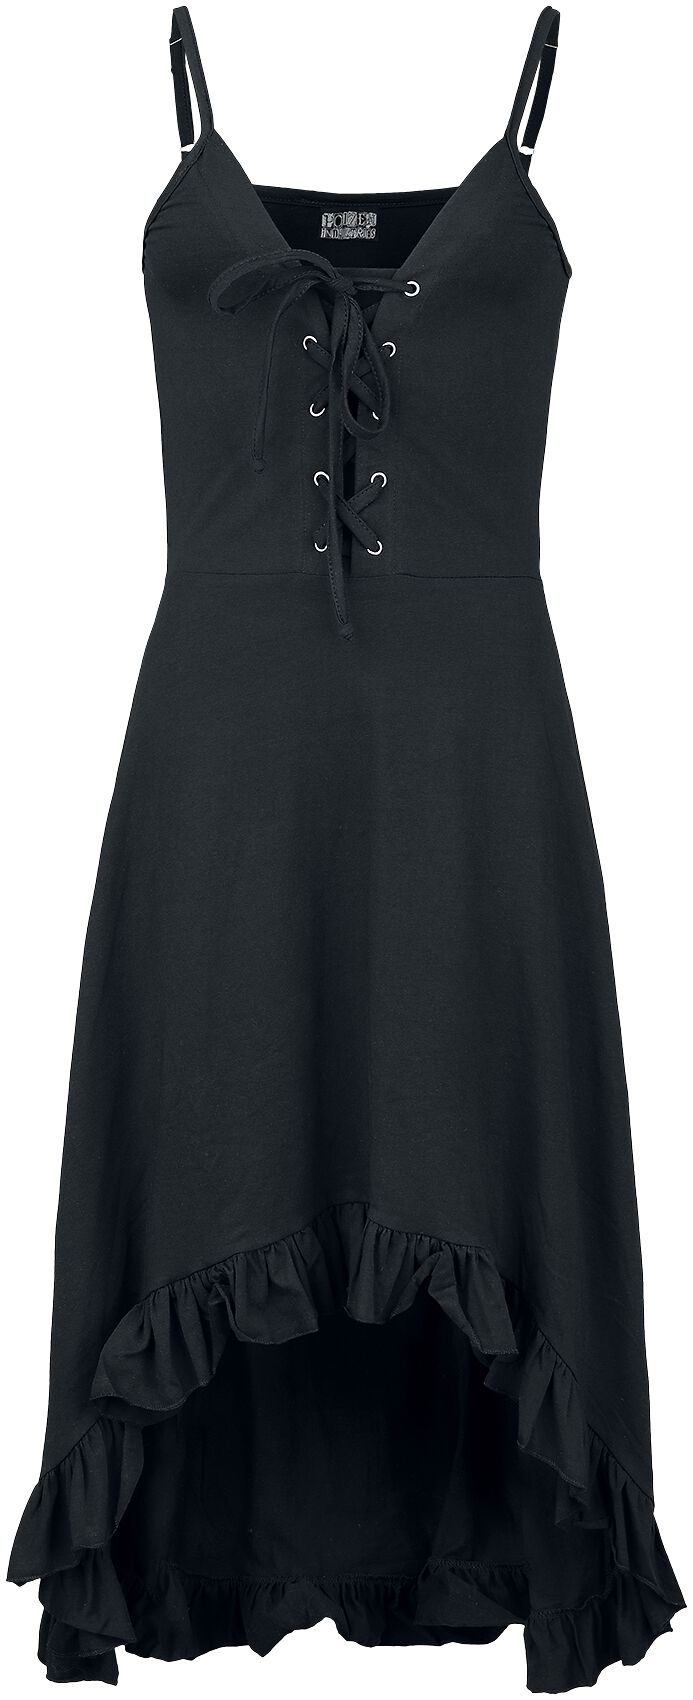 Robe courte Gothic de Innocent - Astraea Dress - S à XXL - pour Femme - noir